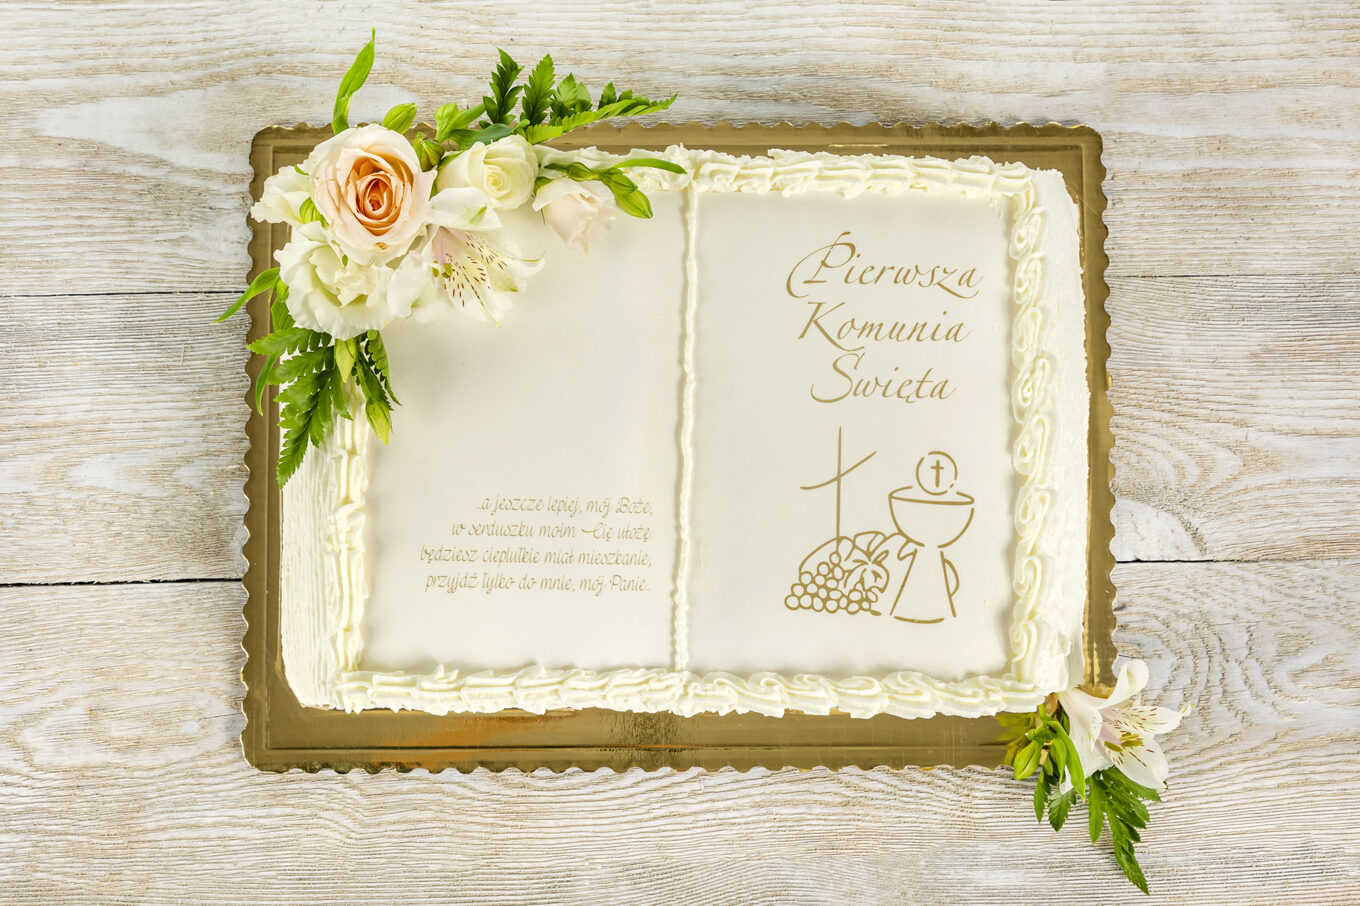 Tort książka kwiaty na komunię Cukiernia Jacek Placek to synonim smaku domowych ciast z naturalnych produktów.